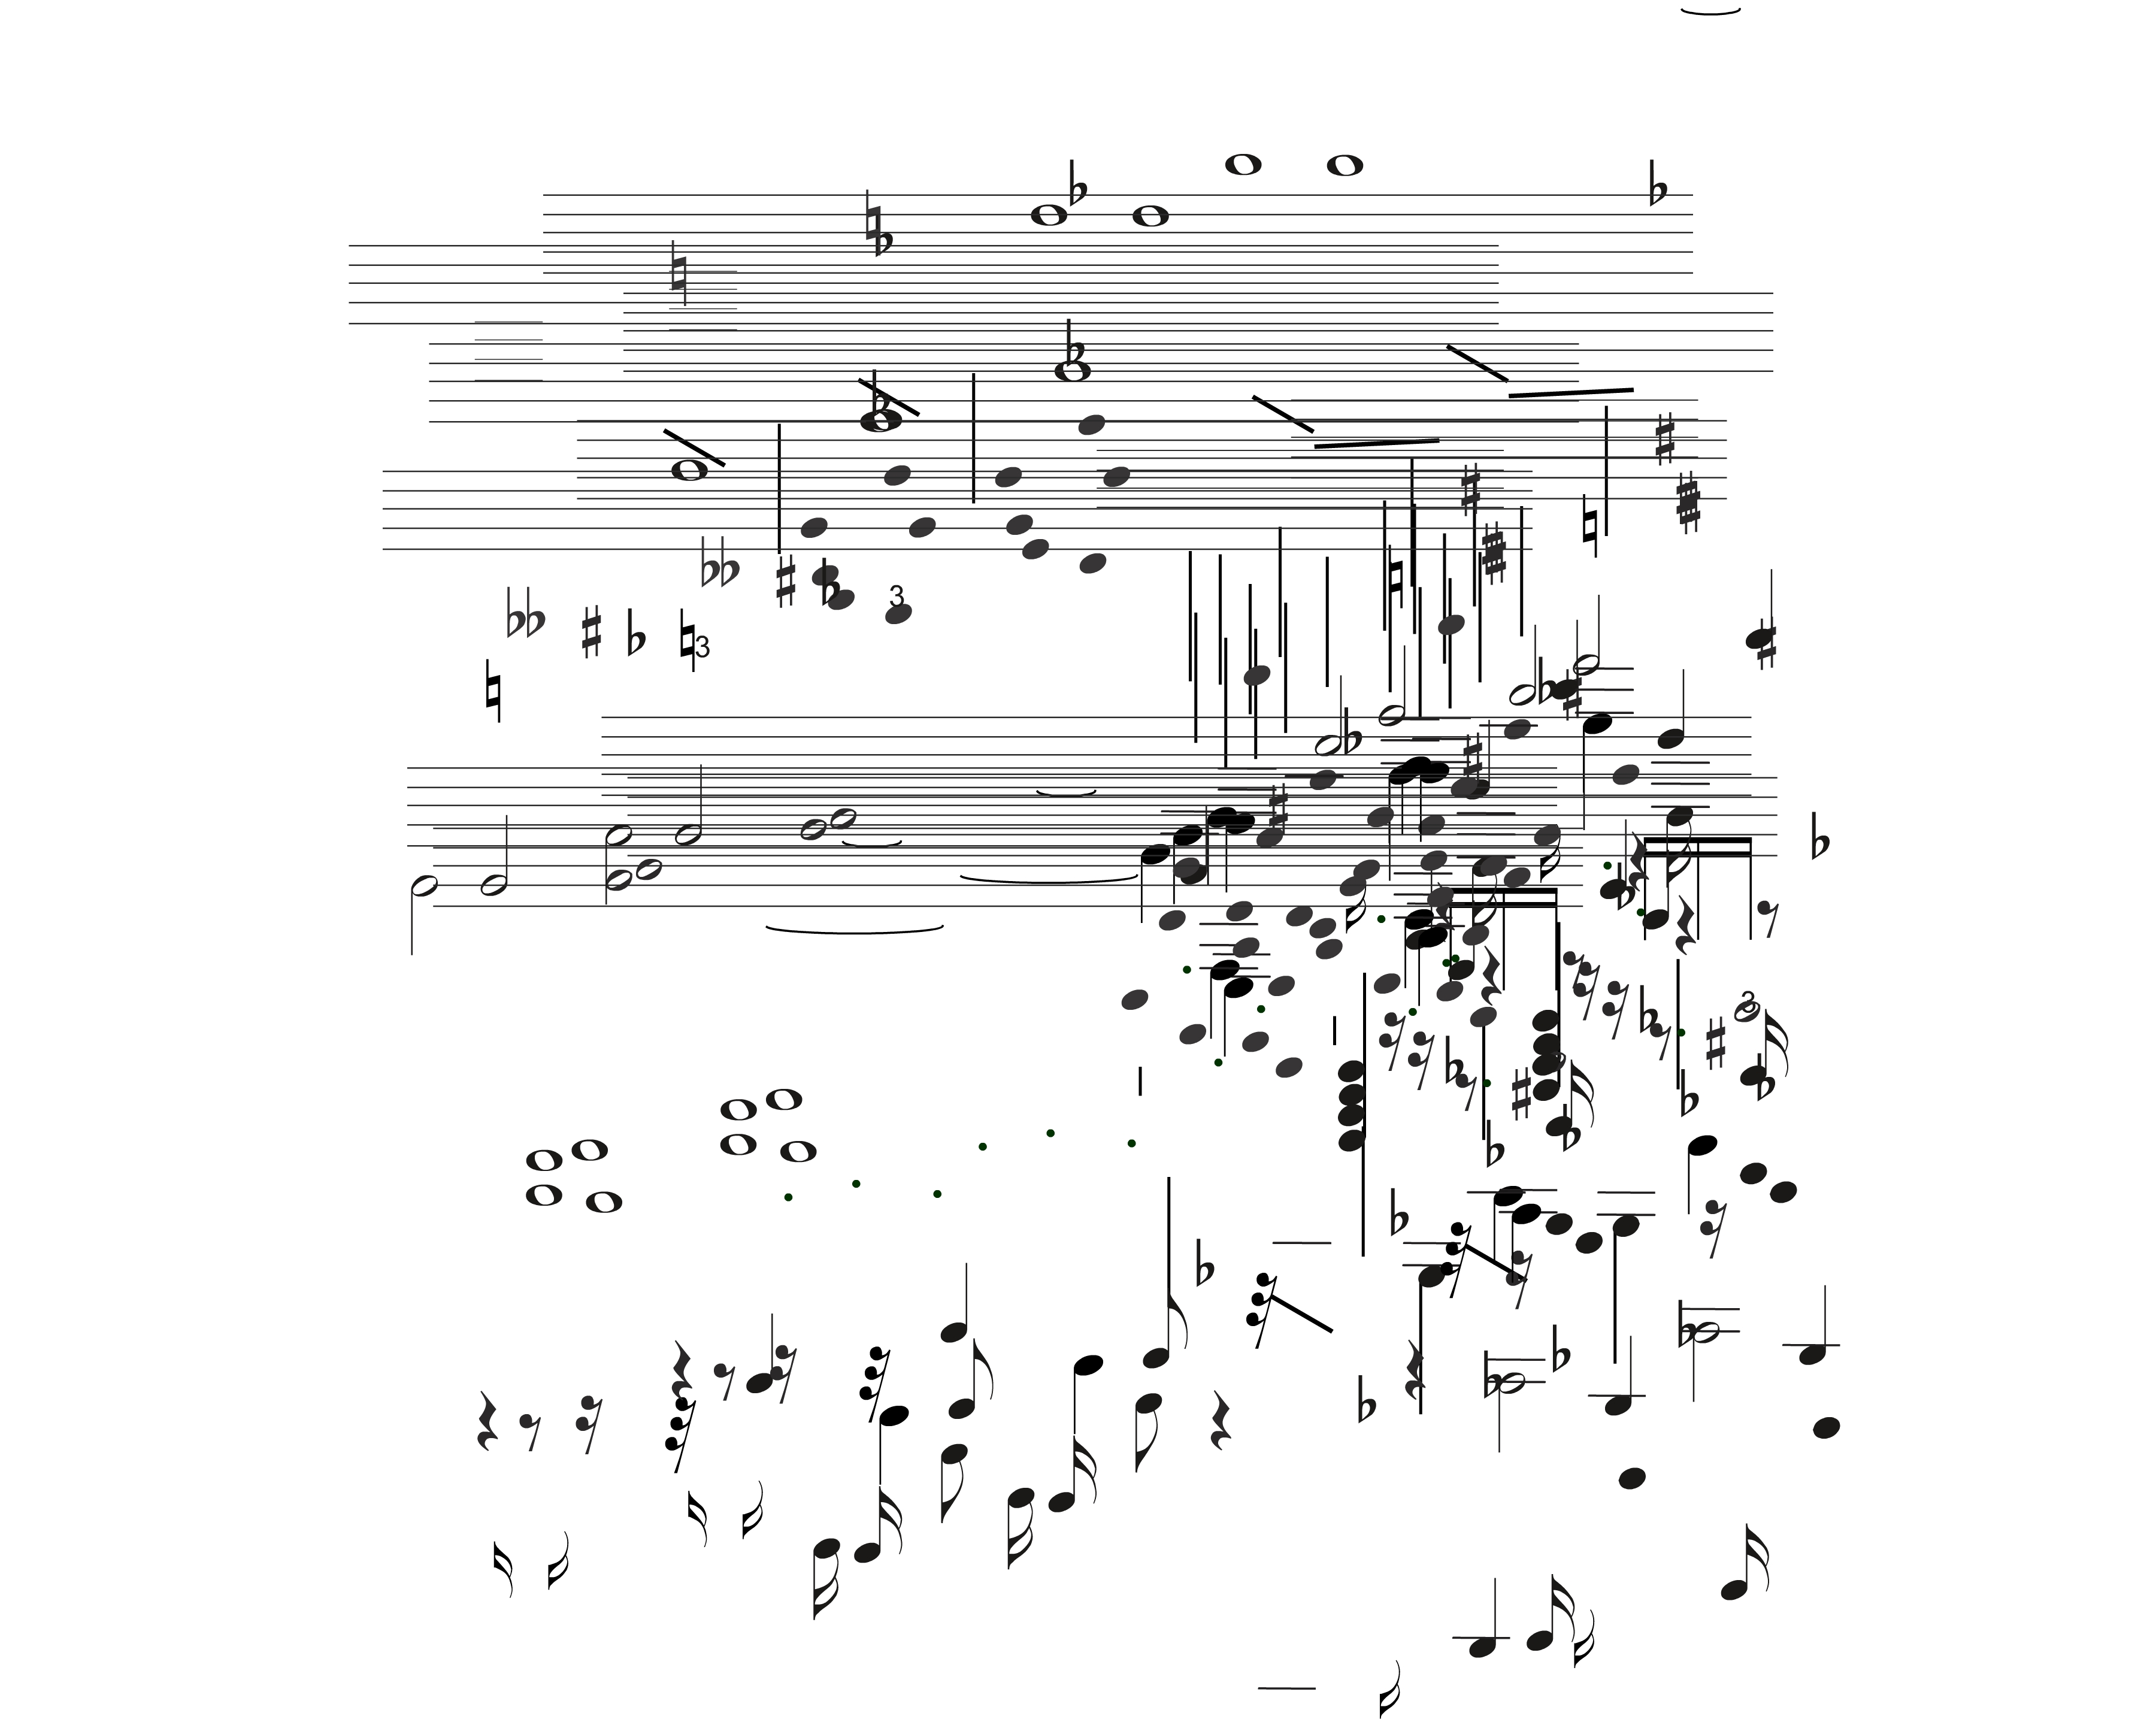 Michael Renkel, Nomos Alto, rehearsal score page